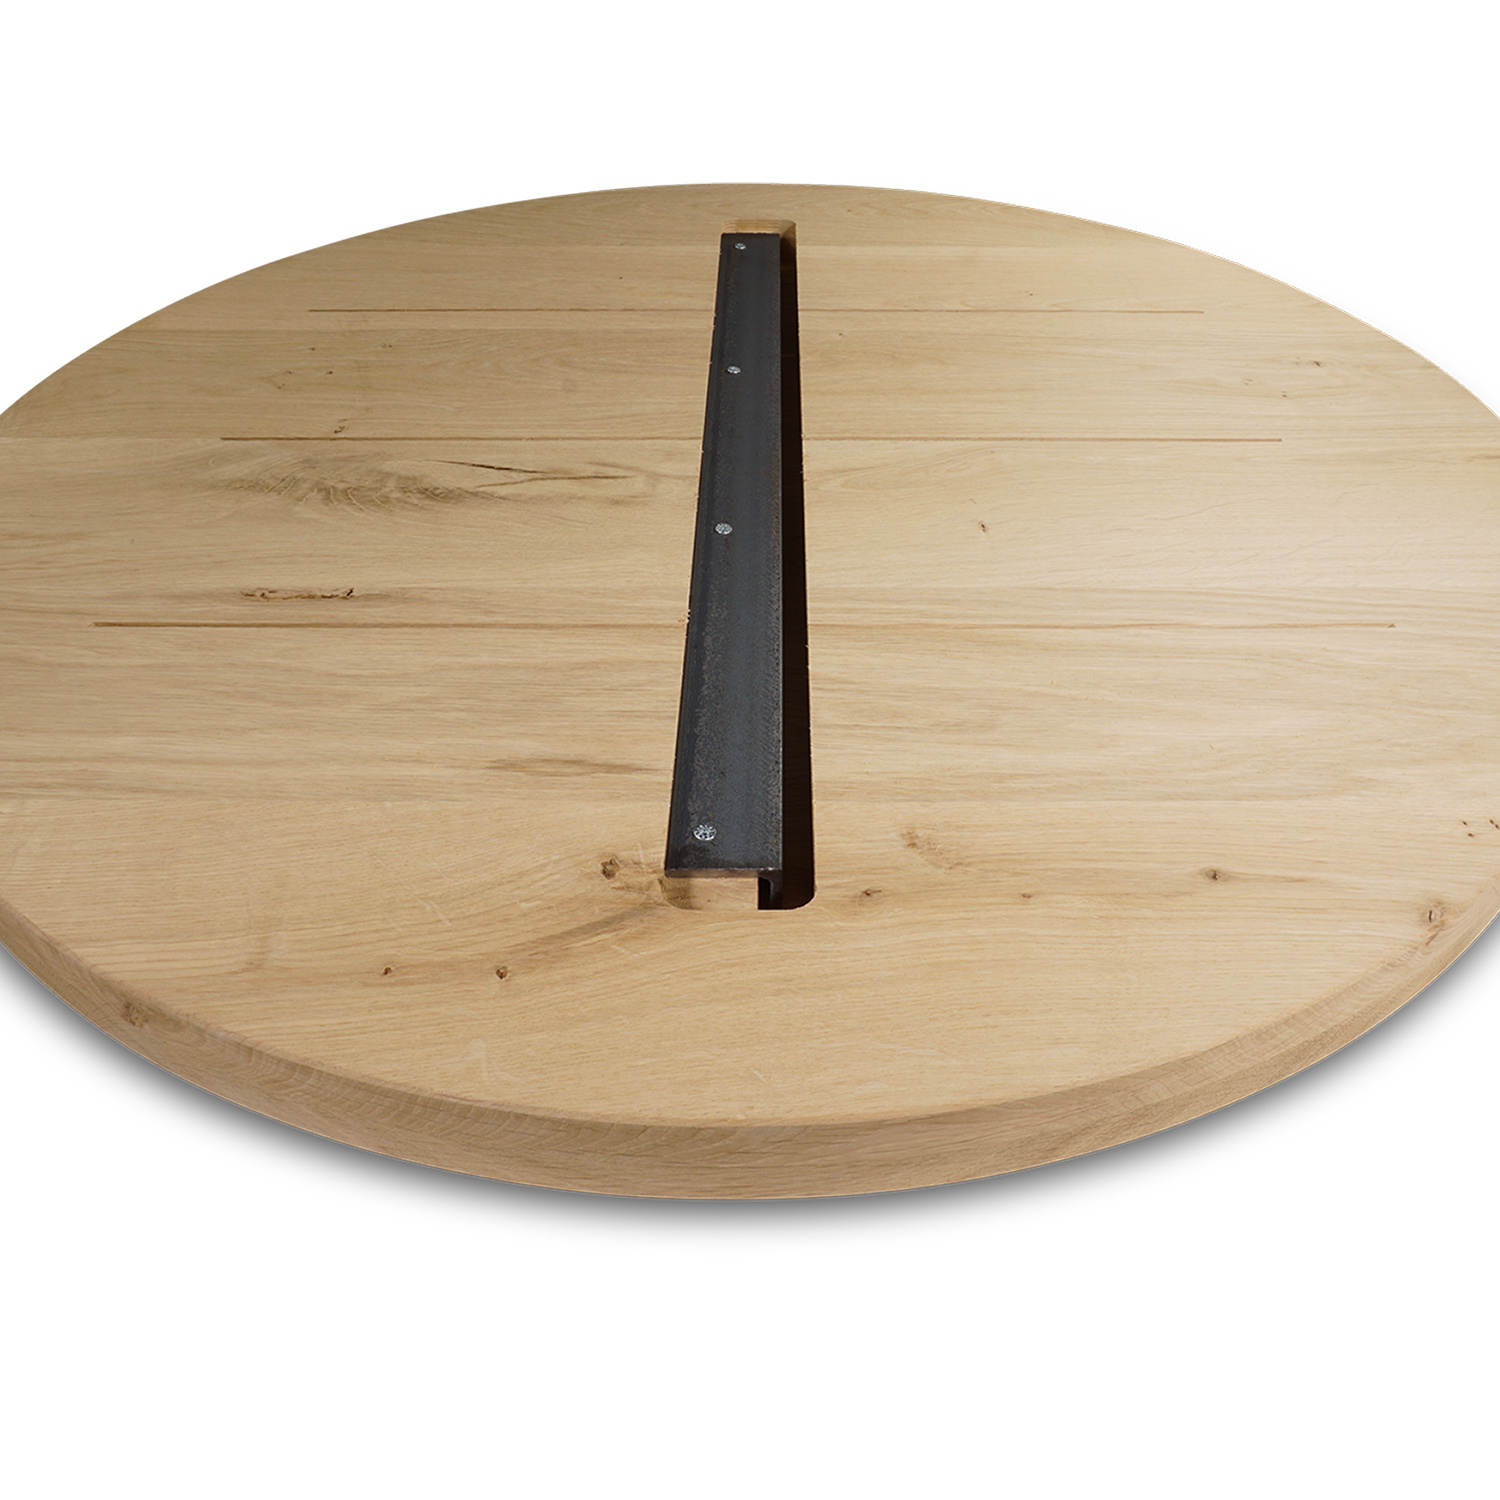  Tischplatte Eiche rund nach Maß - 4 cm dick (2-lagig) - Eichenholz rustikal - Durchmesser: 30 - 180 cm - Eiche Tischplatte rund massiv - verleimt & künstlich getrocknet (HF 8-12%)